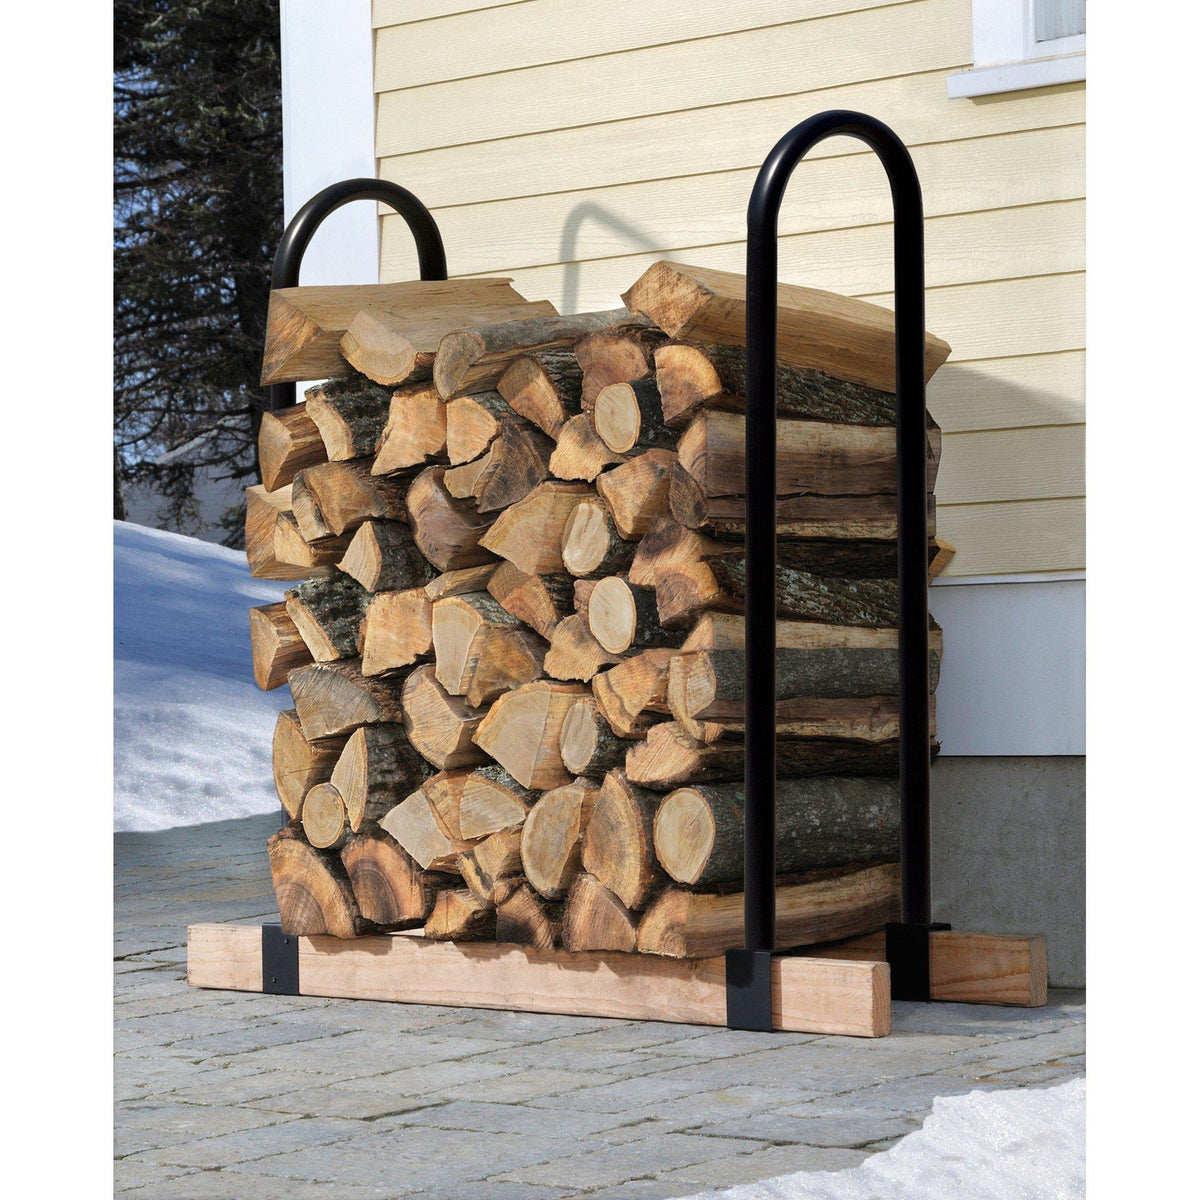 ShelterLogic LumberRack Firewood Rack Adjustable Steel Bracket Kit